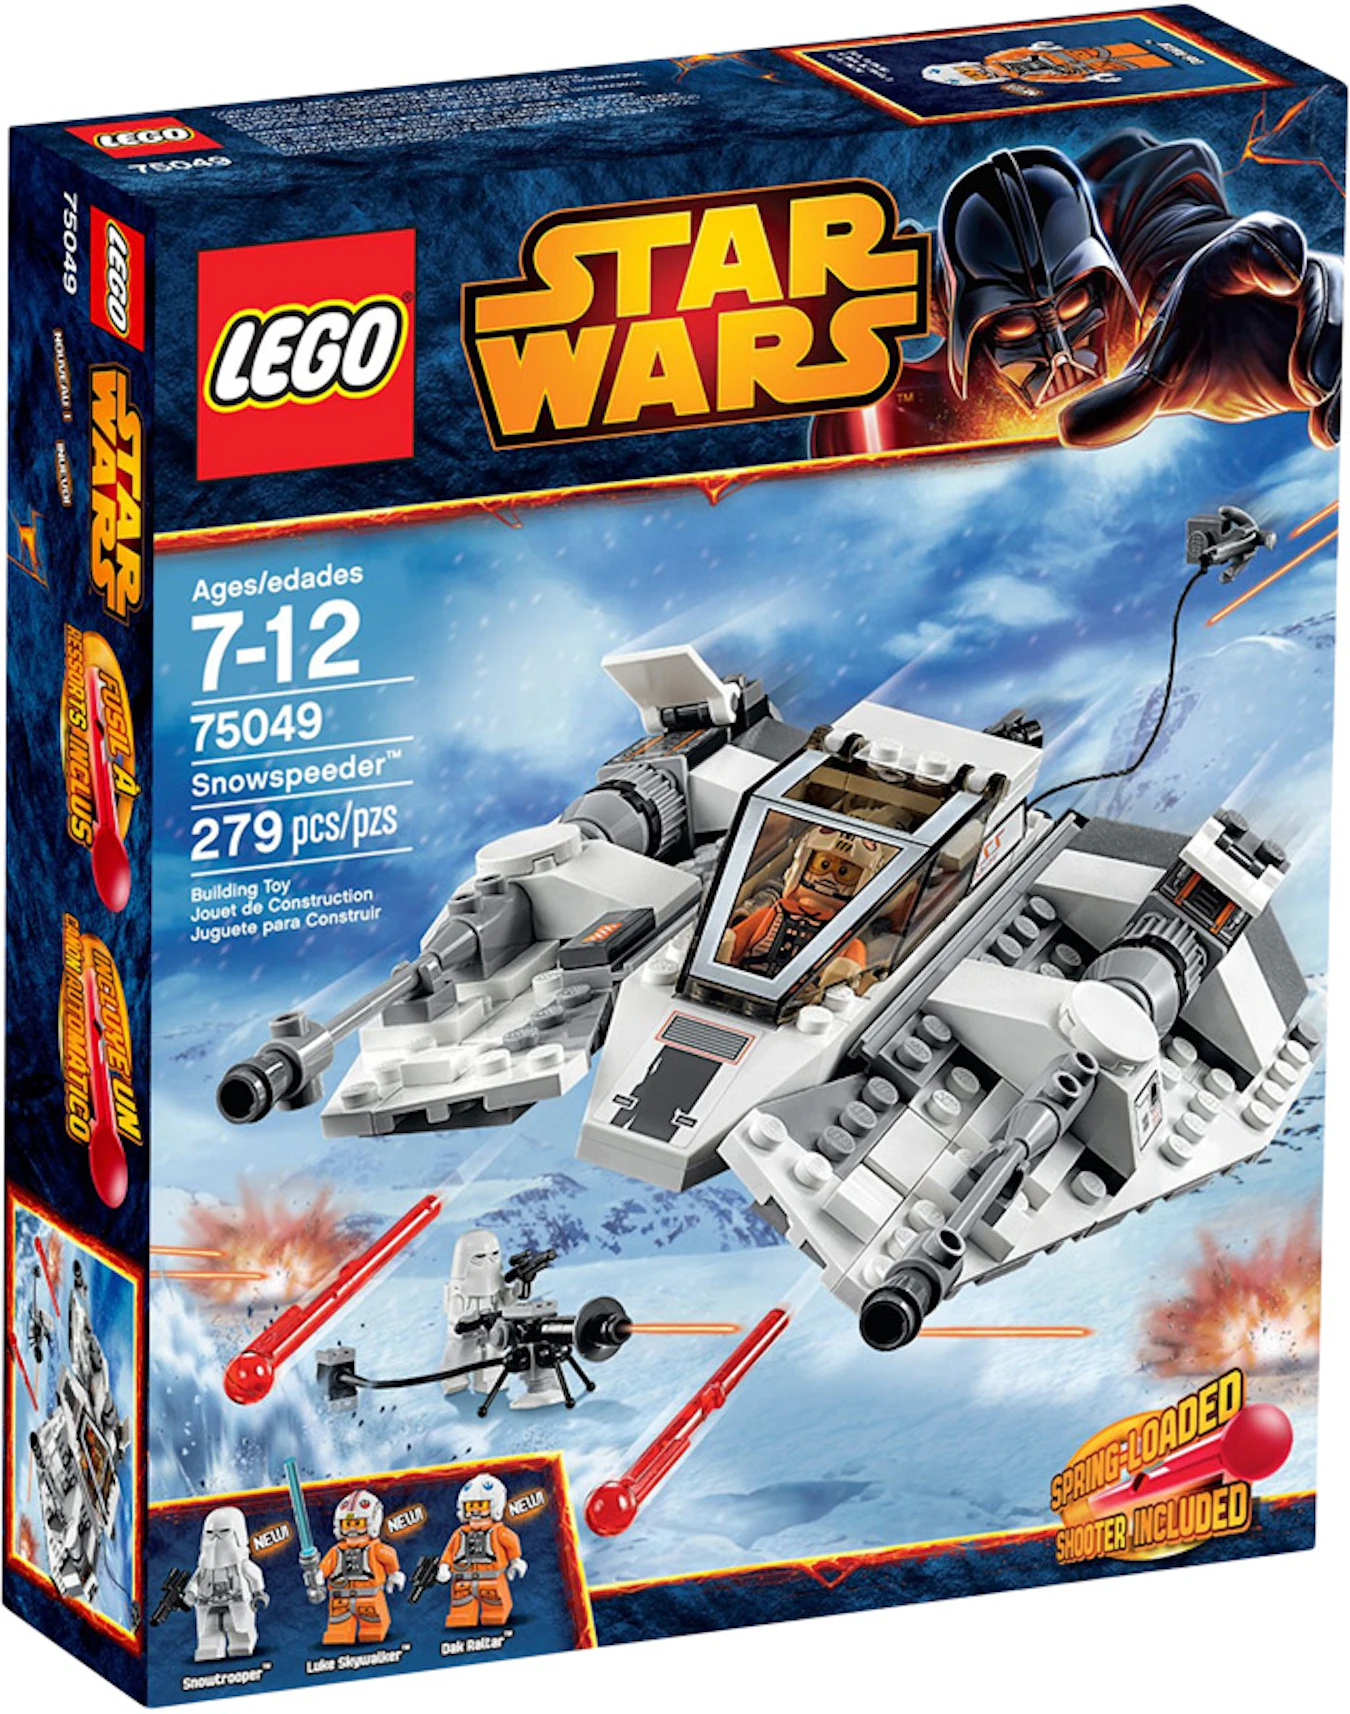 studieafgift ægtefælle Soldat LEGO Star Wars Snowspeeder Set 75049 - US